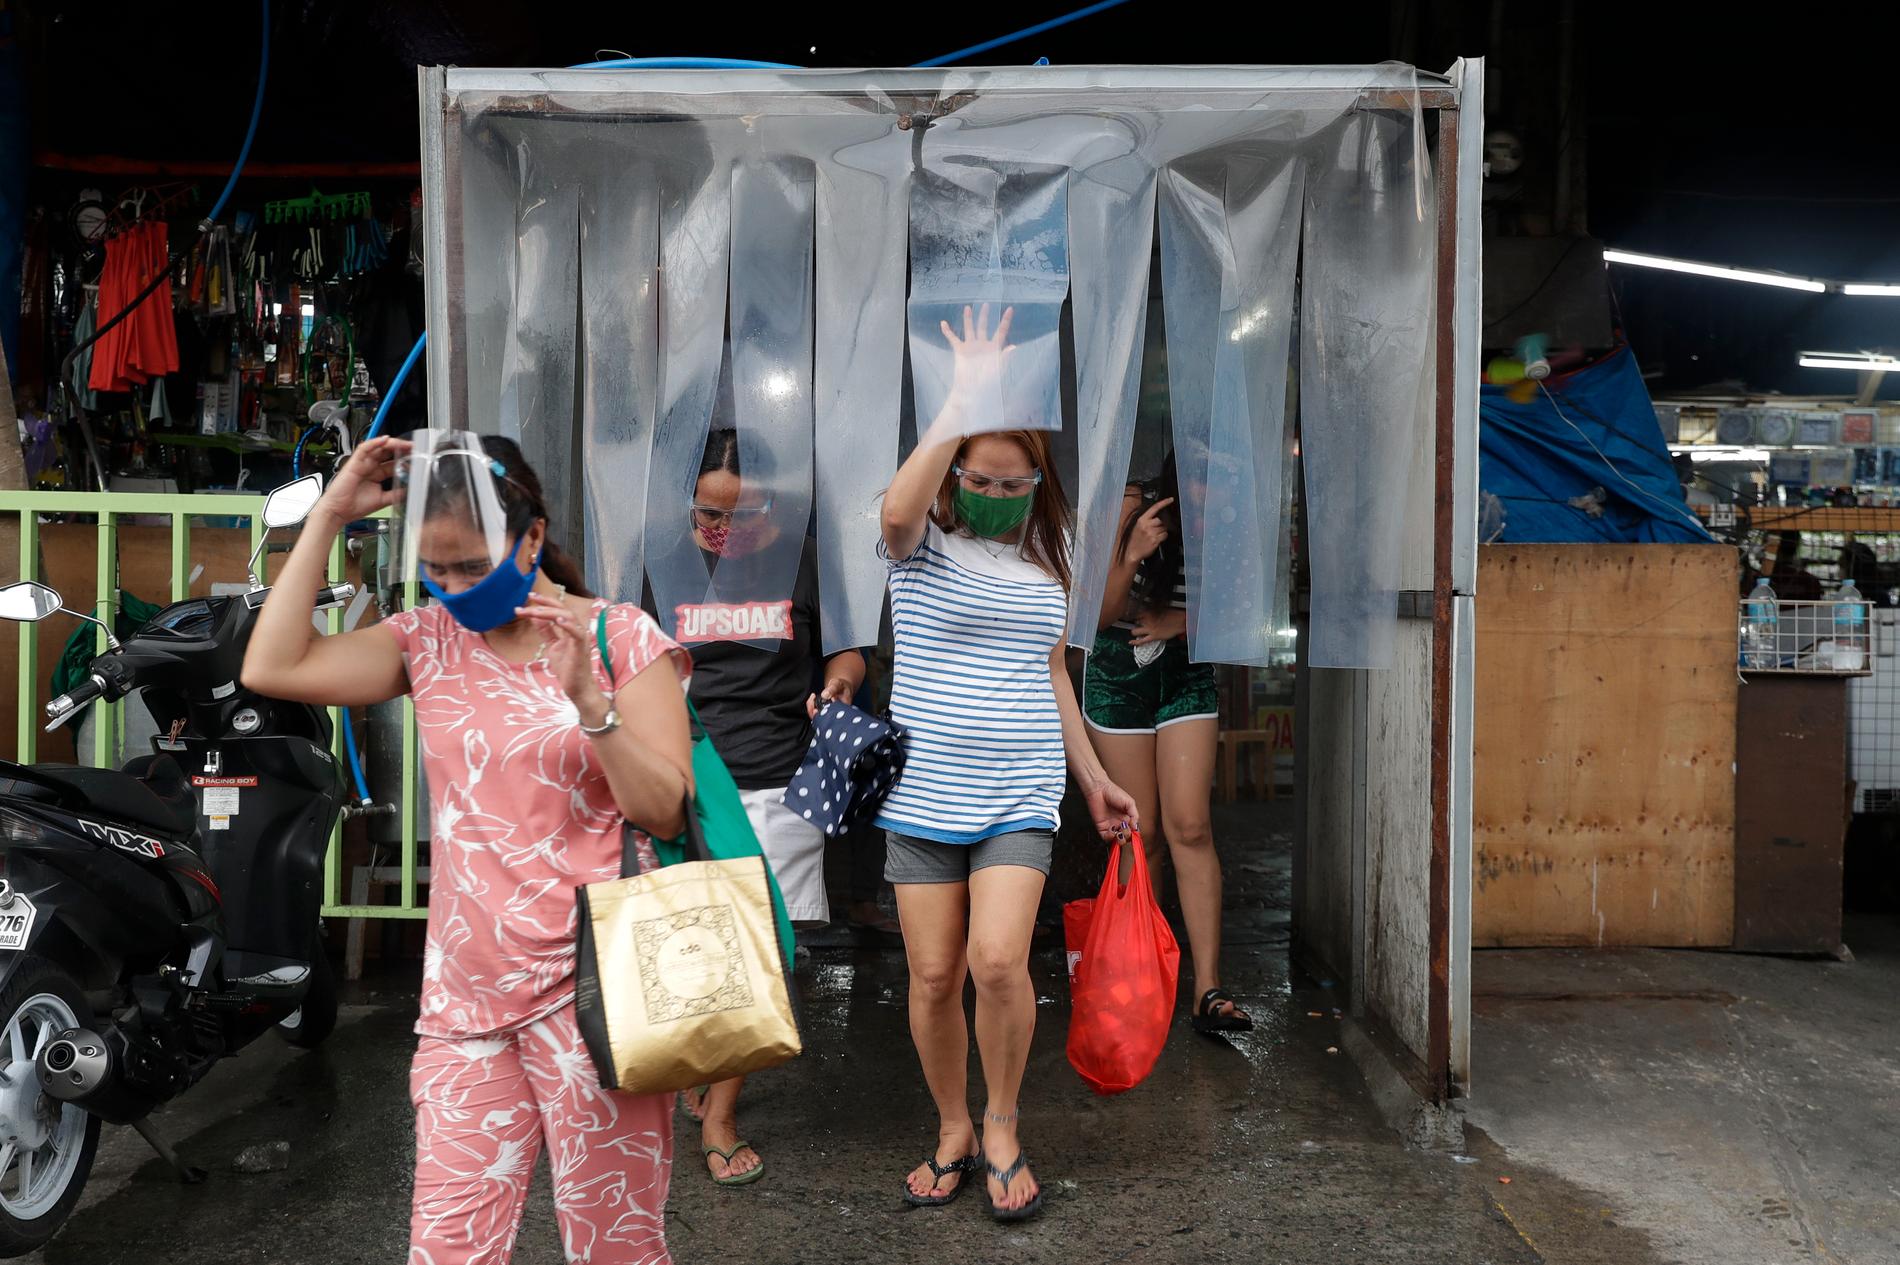 Kvinnor lämnar en desinfektionsstation efter att ha handlat mat på en marknad i staden Quezon. Arkivbild.